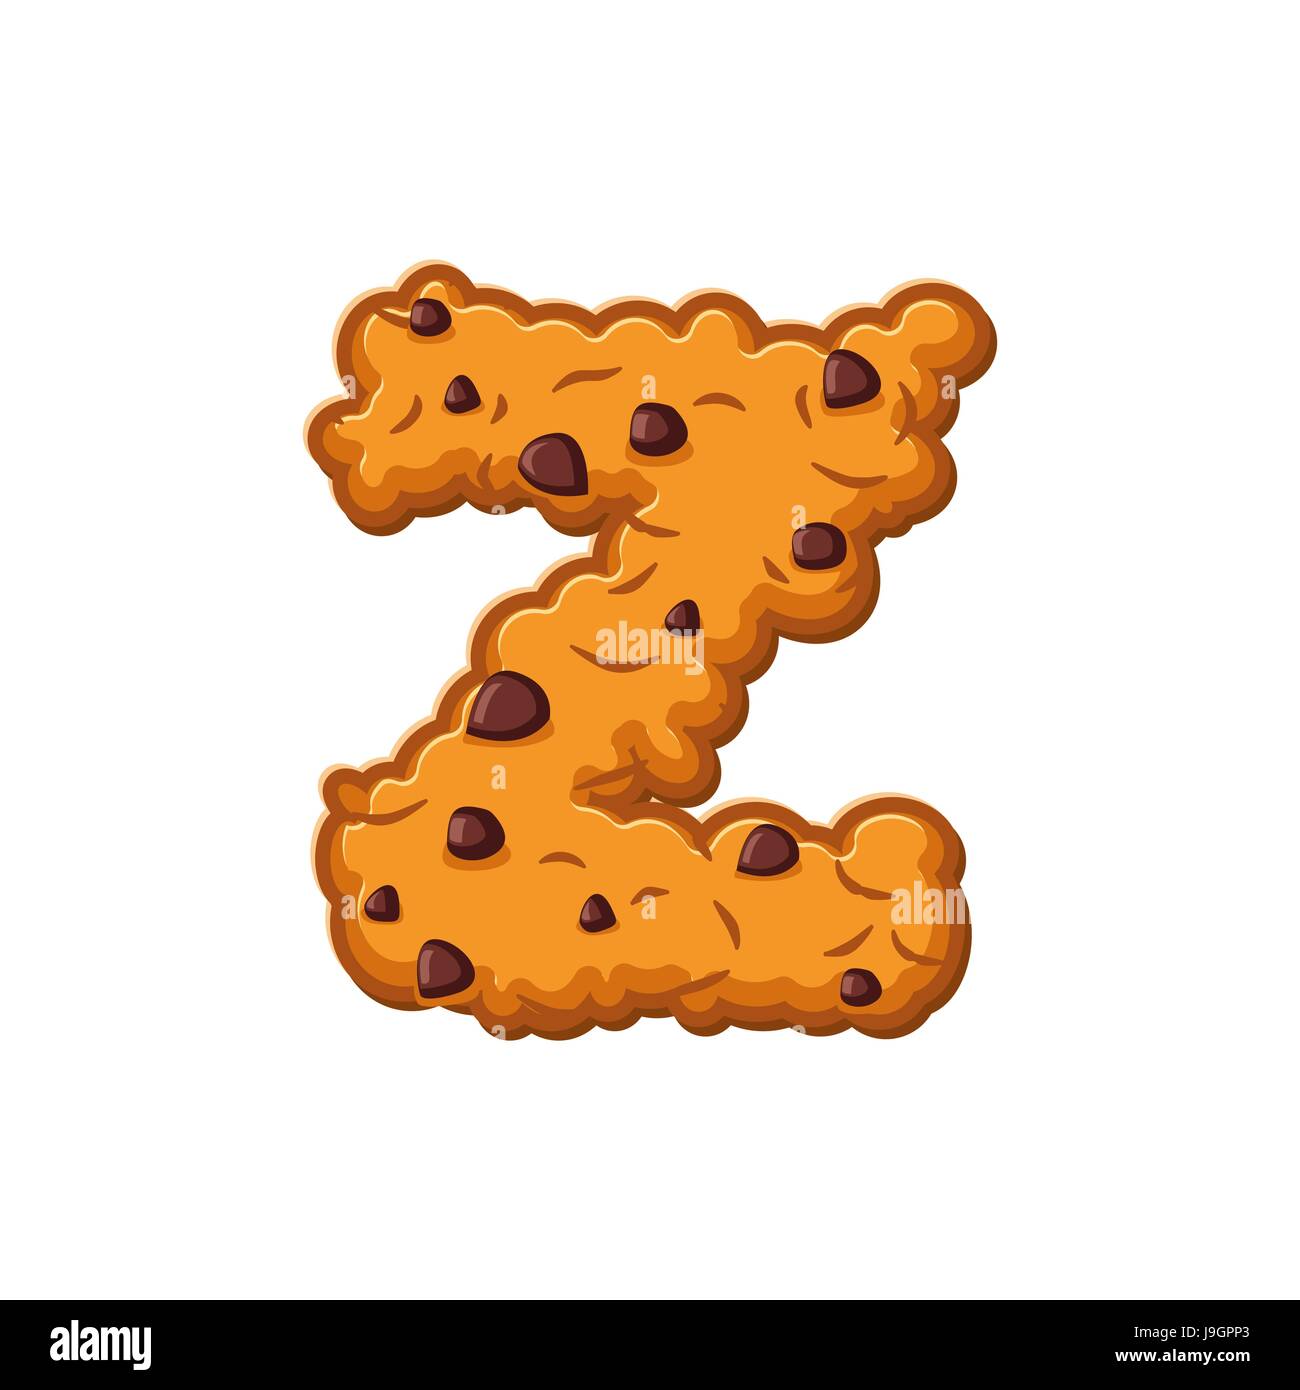 Biscuits D'une Lettre Police De Biscuit Symbole D'alphabet De Biscuit De  Farine D'avoine Illustration de Vecteur - Illustration du cuisine, biscuit:  85430683